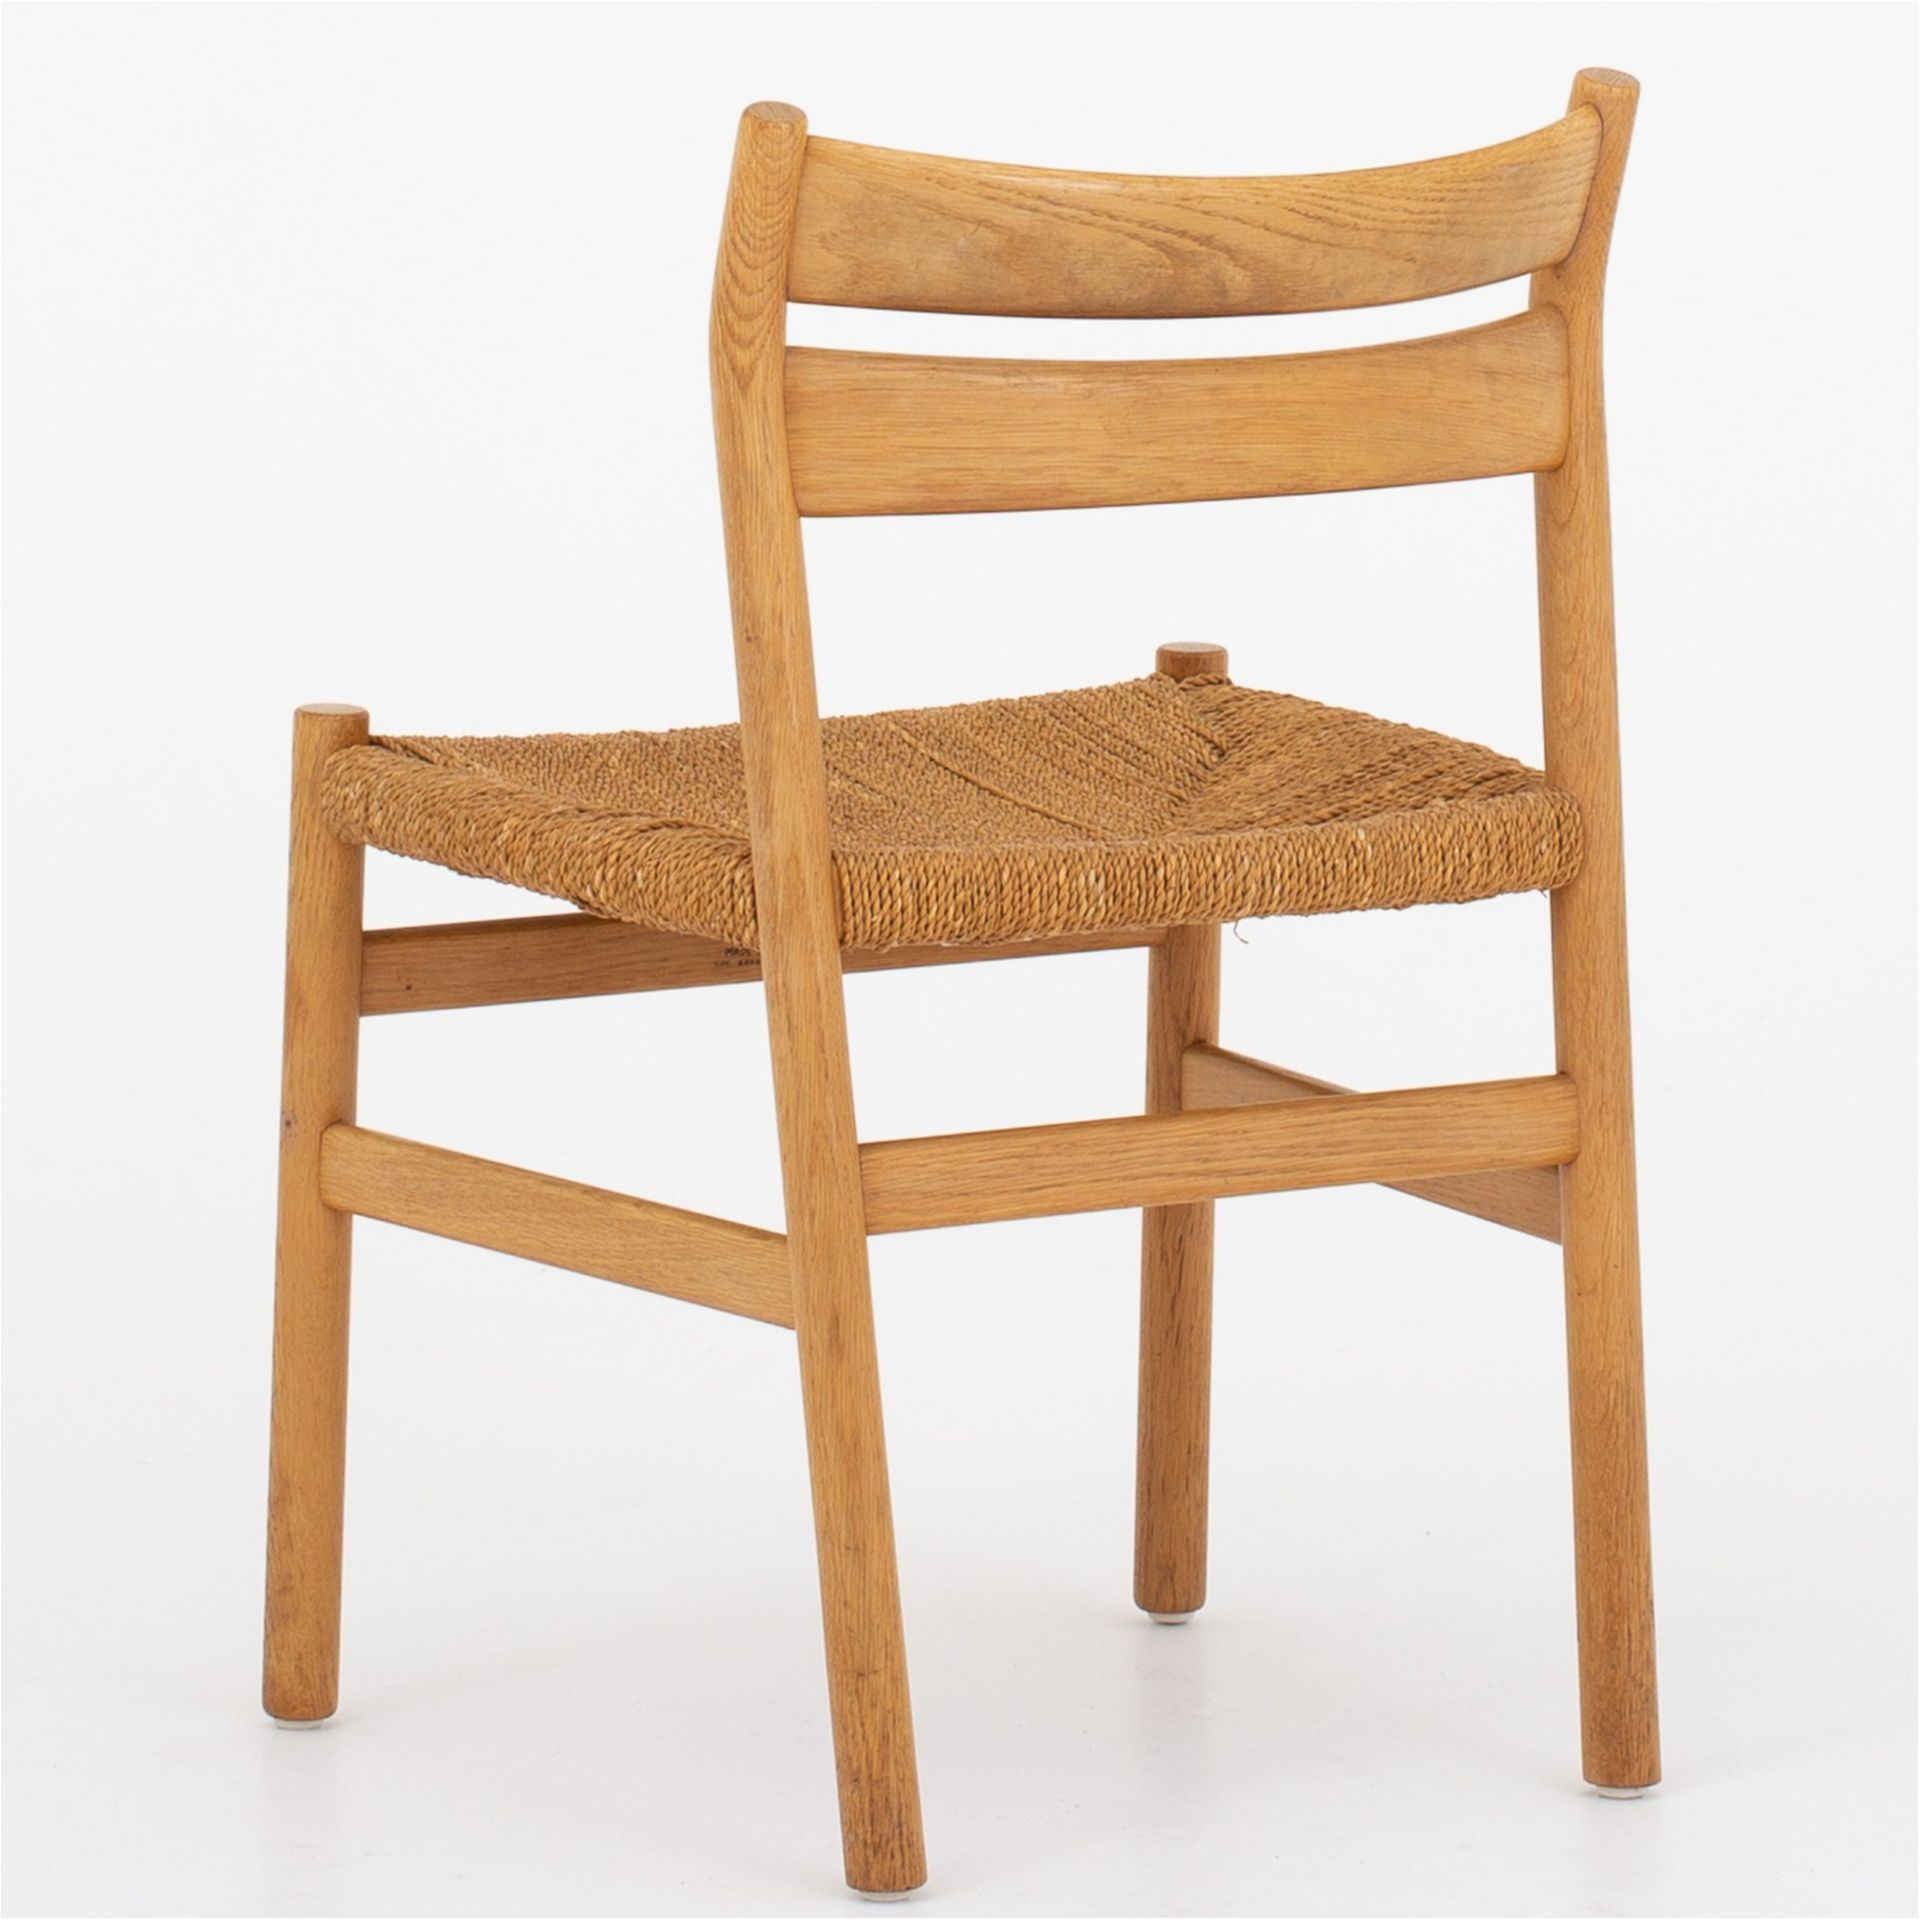 BM 1 - Dining chair in oak